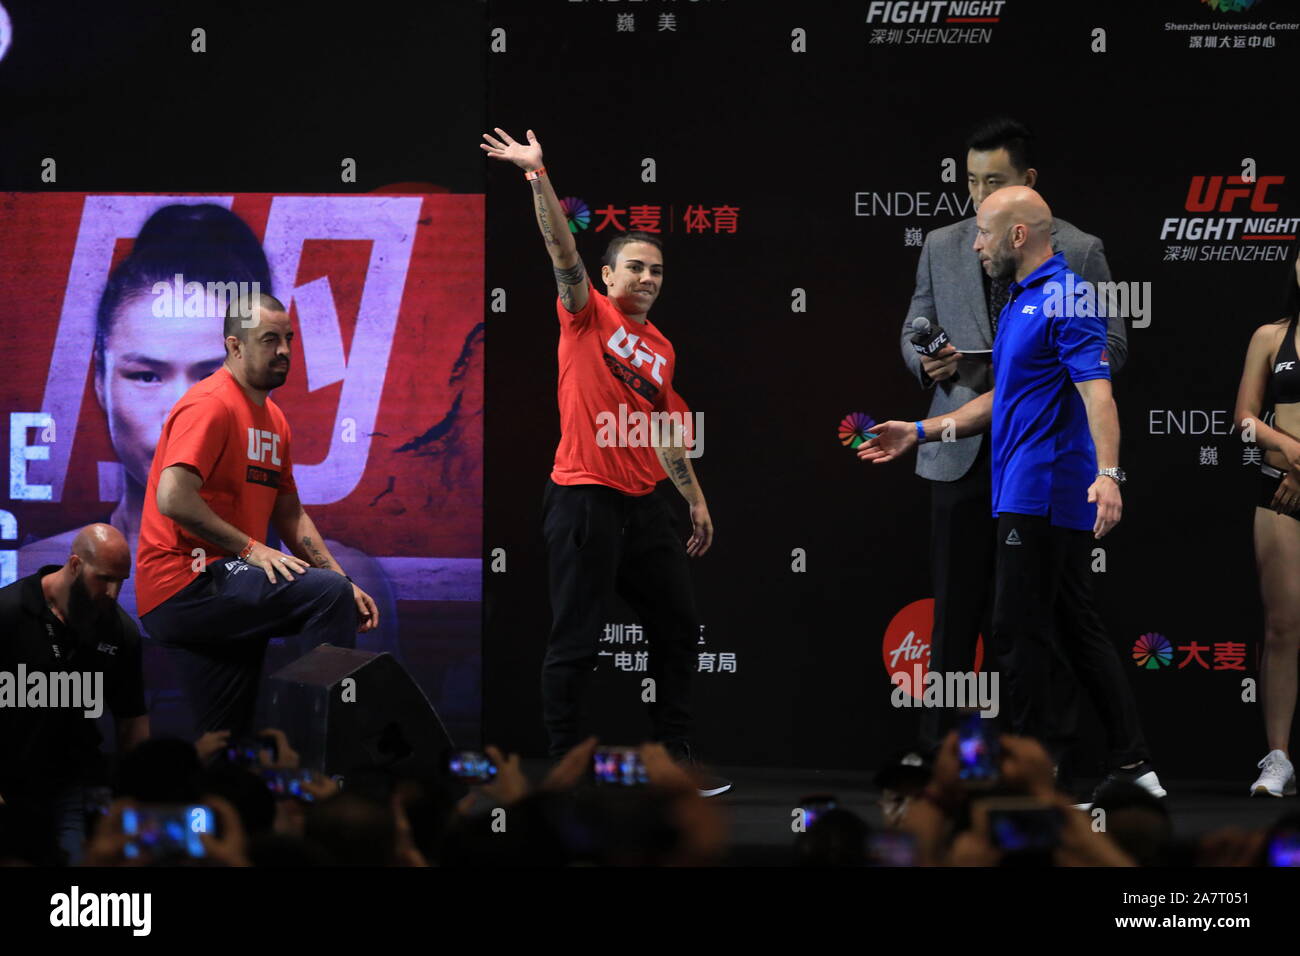 Ultimate Fighting Championship (UFC) ceremonia de pesaje empieza en Shenzhen, en el sur de la provincia china de Guangdong, el 30 de agosto de 2019. Foto de stock